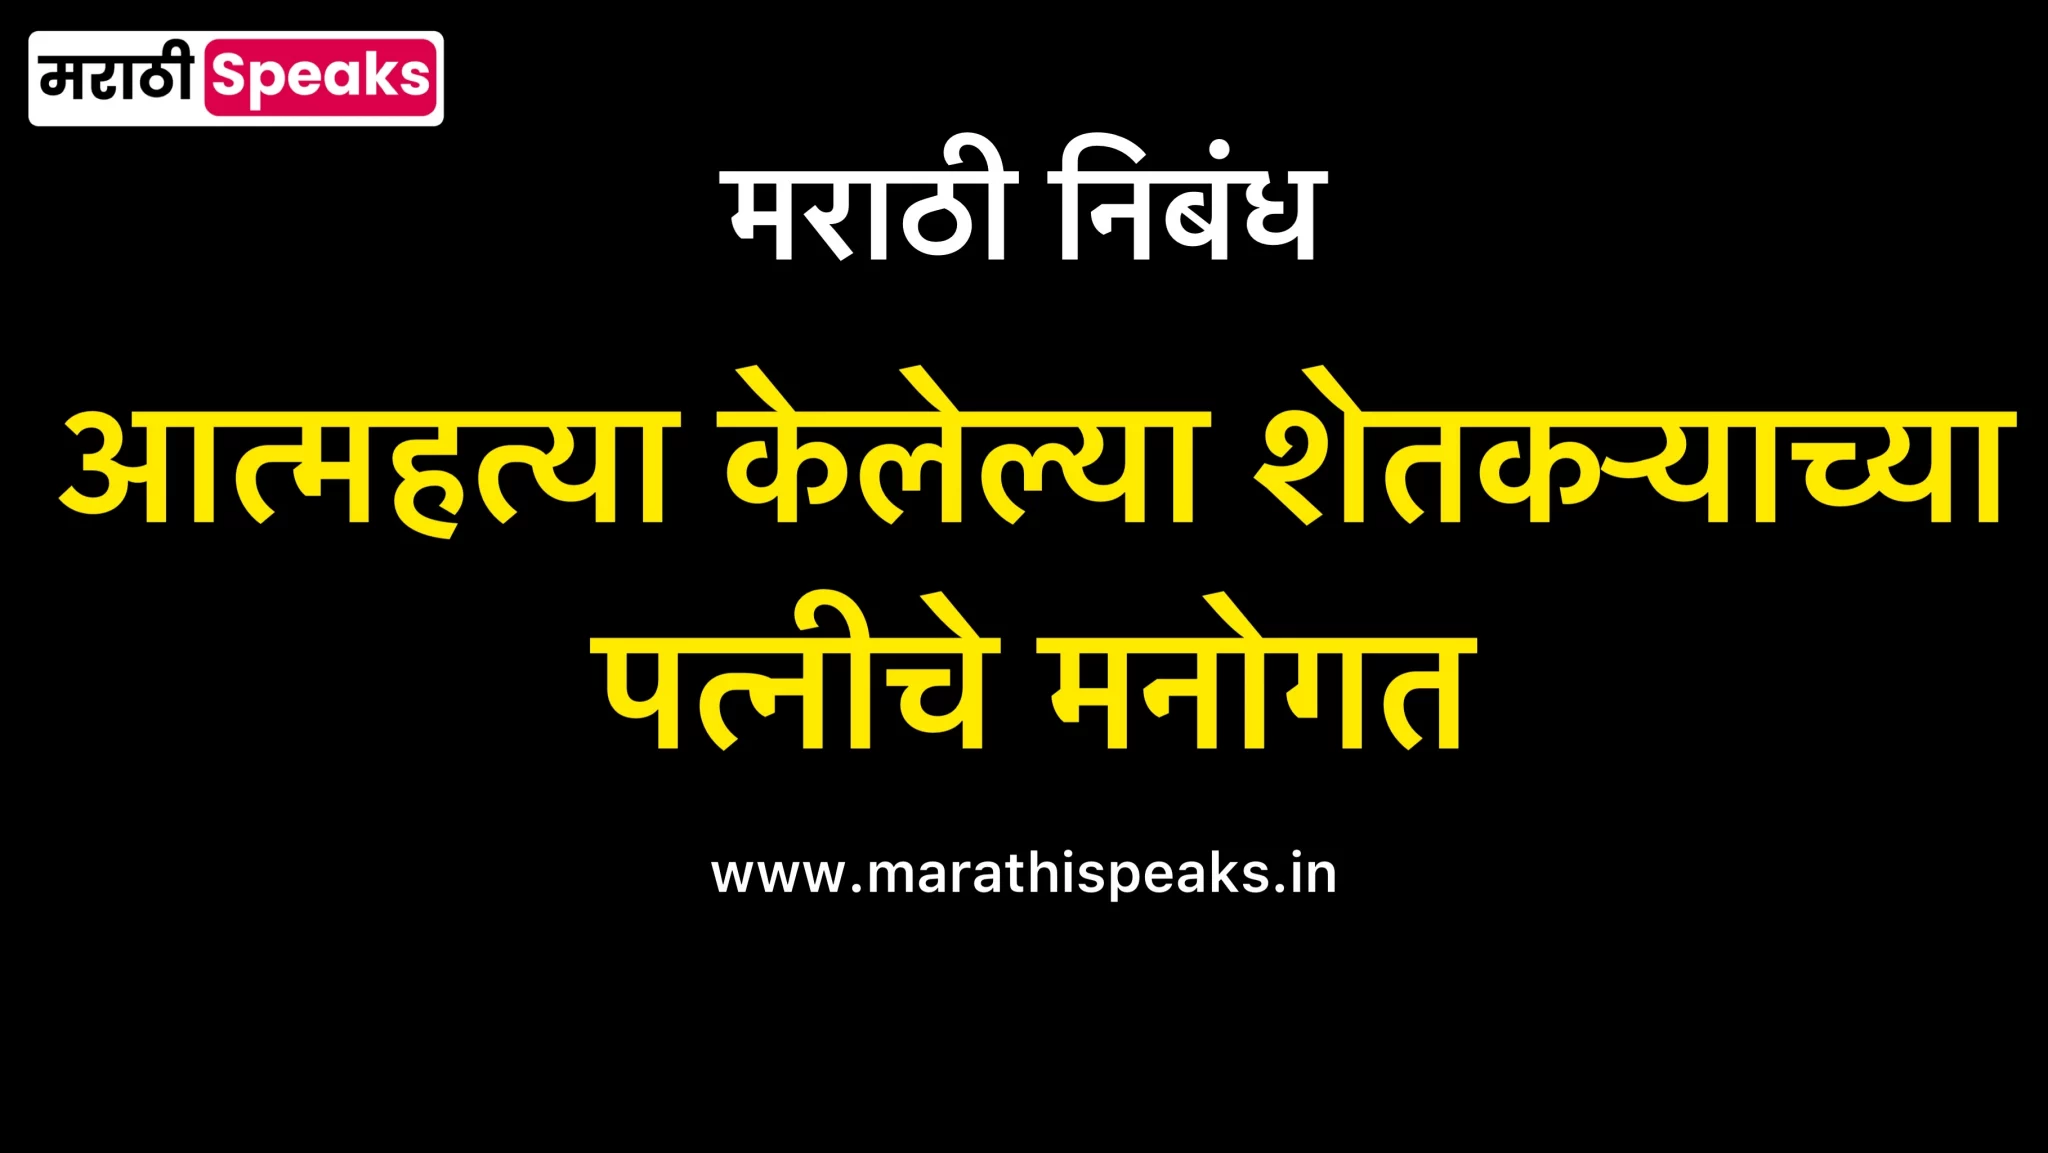 Atmhatya Kelelya Shetkryachya Patniche Manogat Essay In Marathi